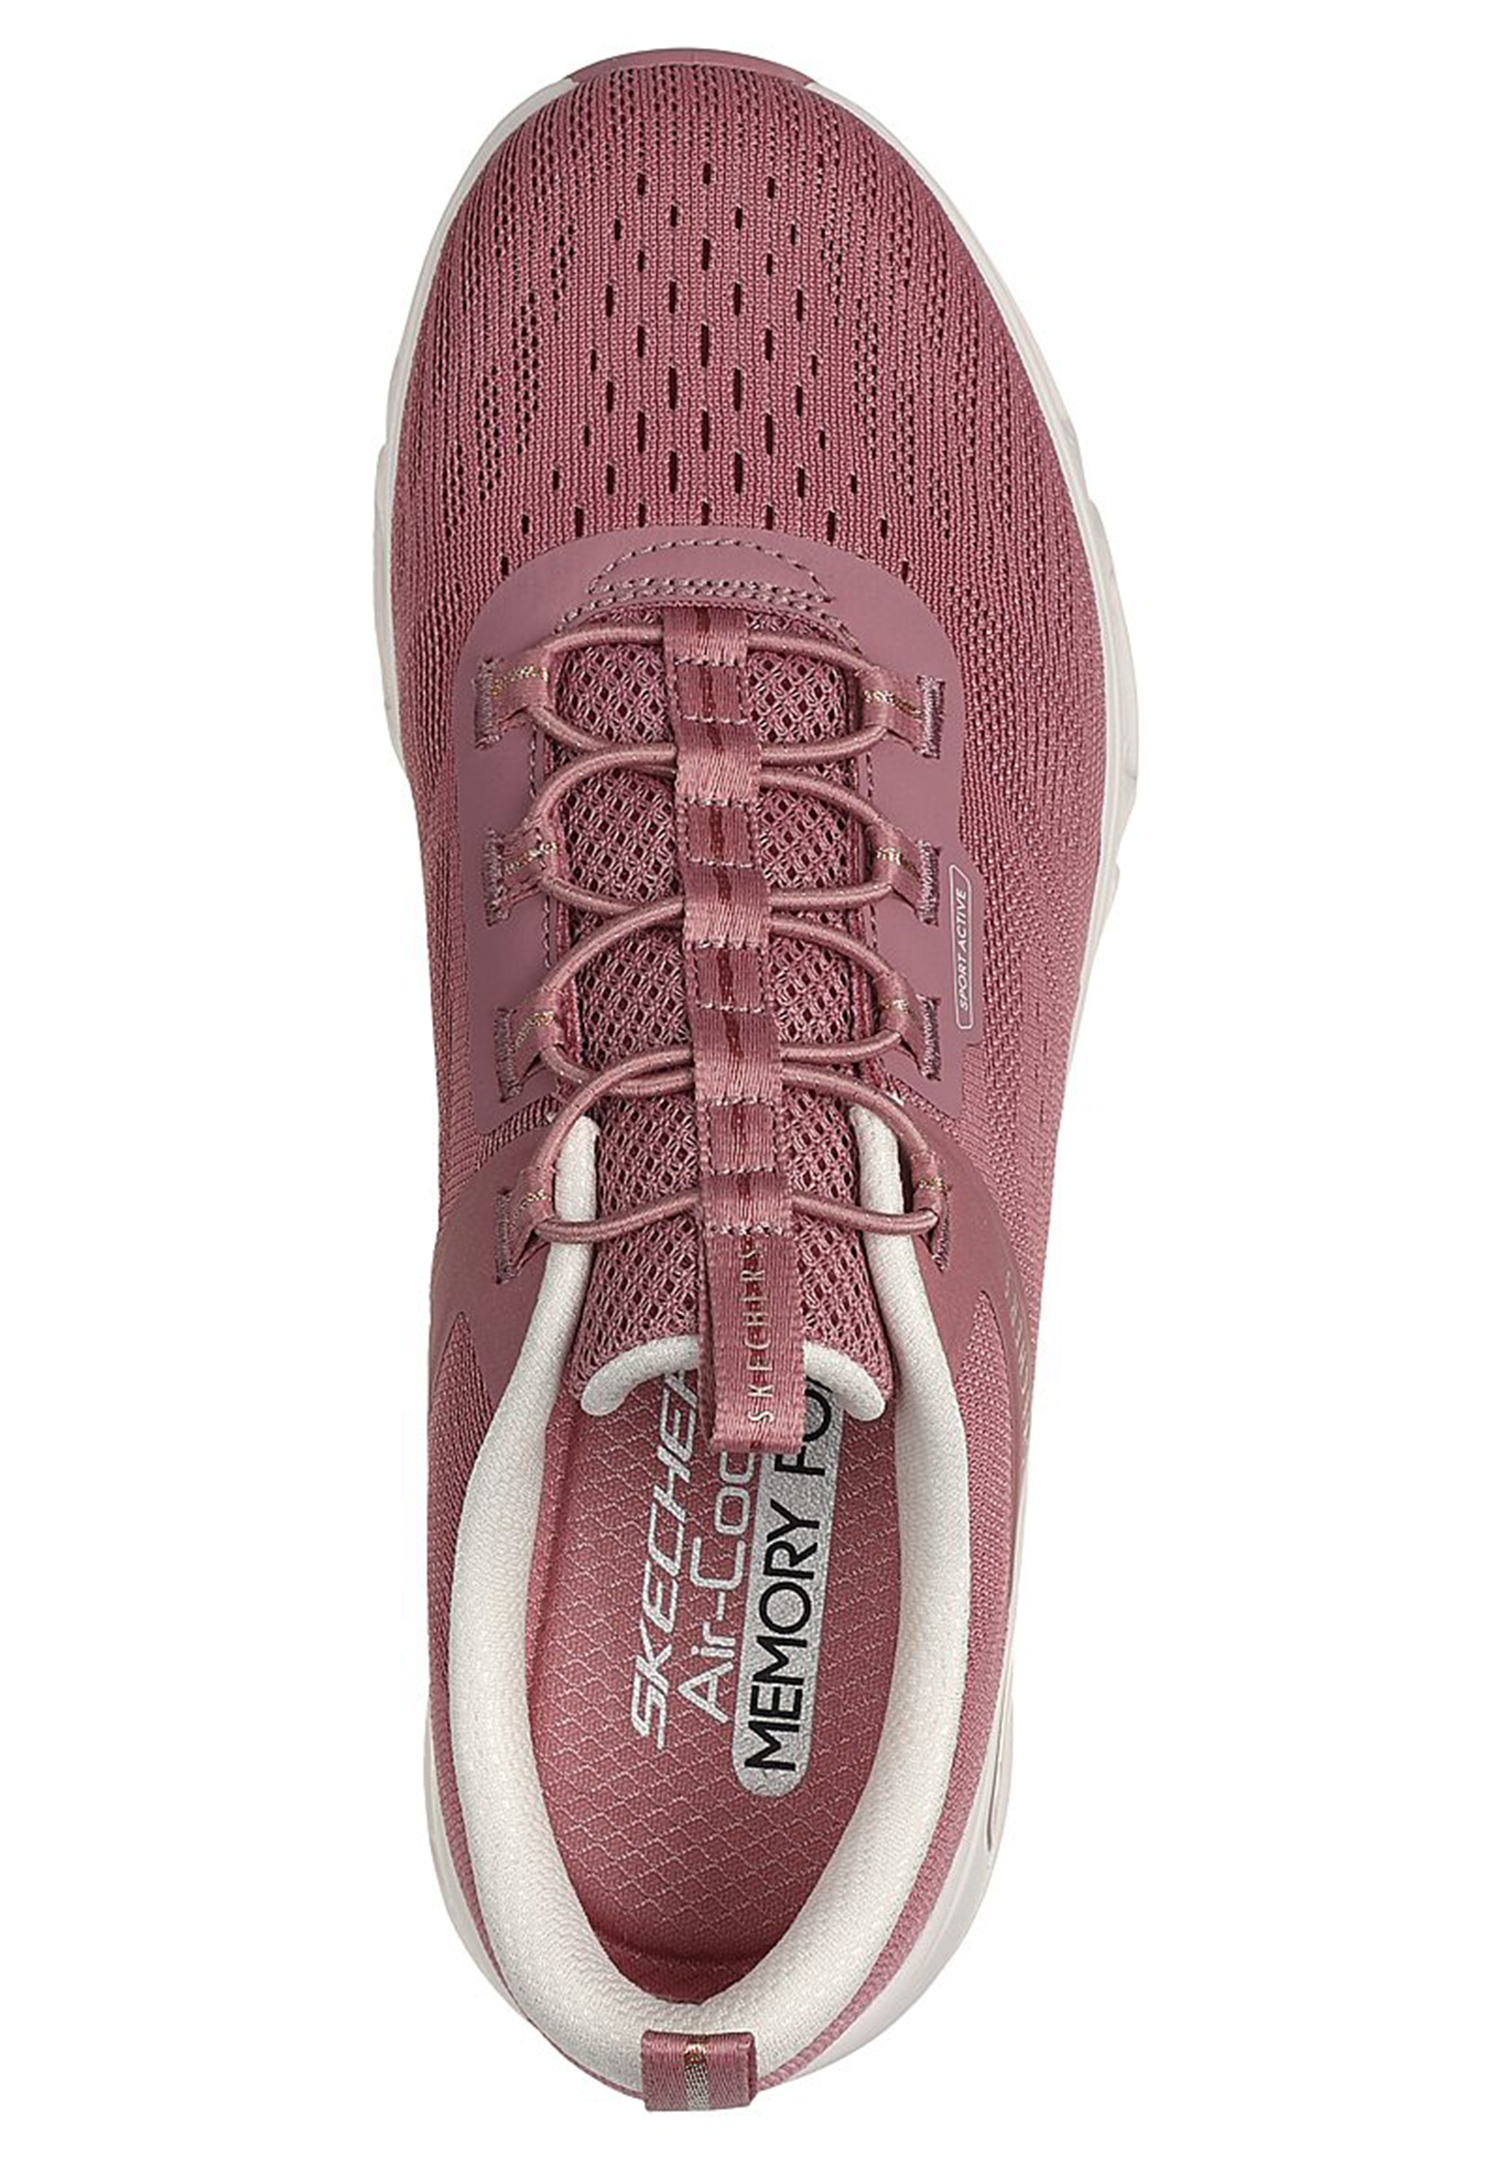 Skechers GLIDE-STEP GRAFITY Damen Sneakers Vegan 104601 DKRS rosa 